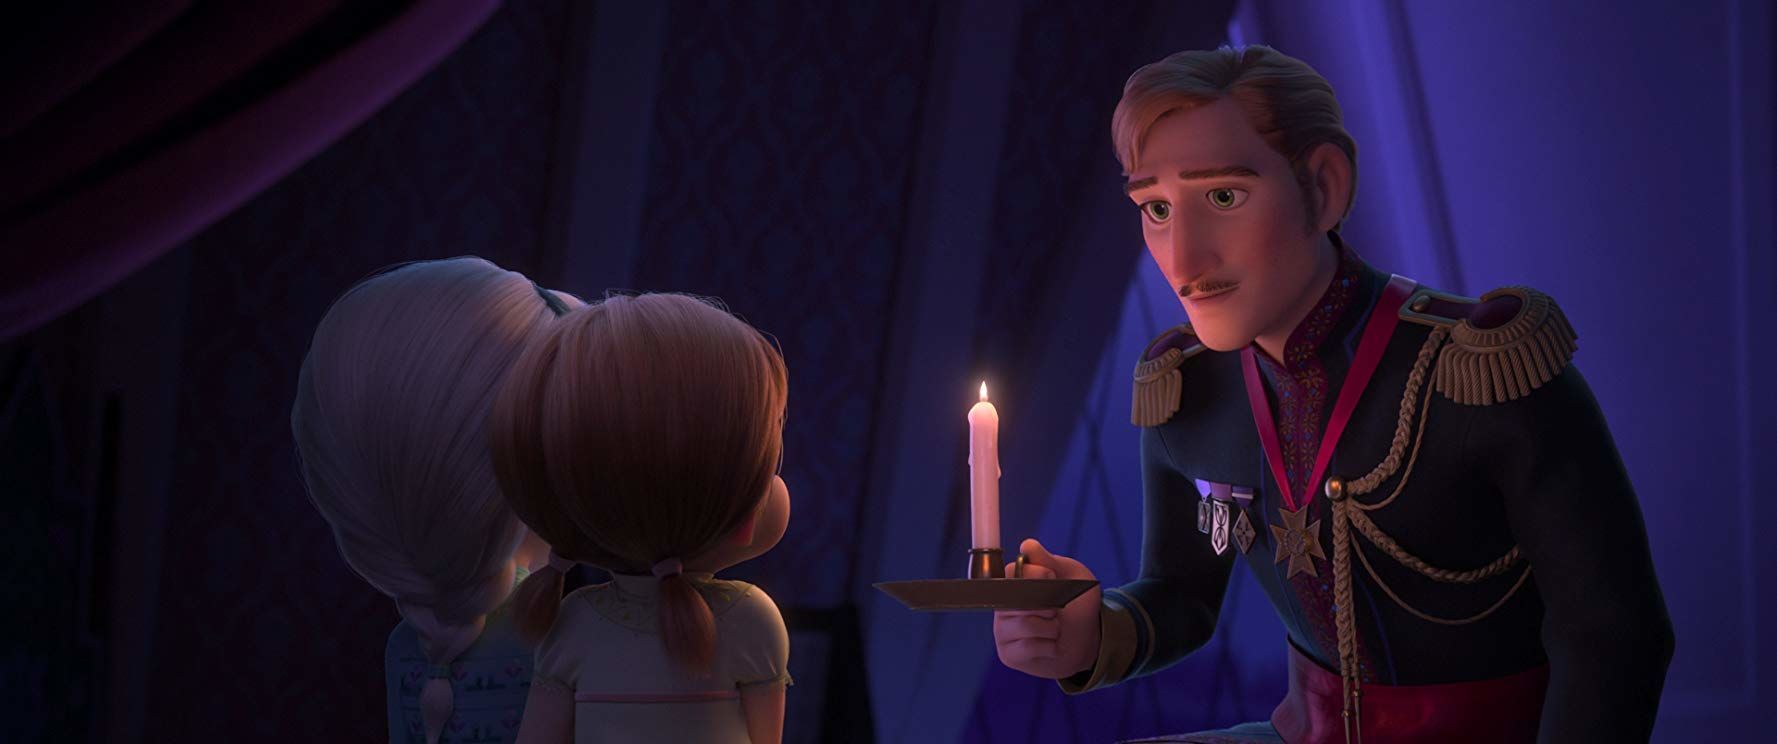 Trailer Kedua Rilis, Penggalan Cerita Frozen 2 Bikin Makin 